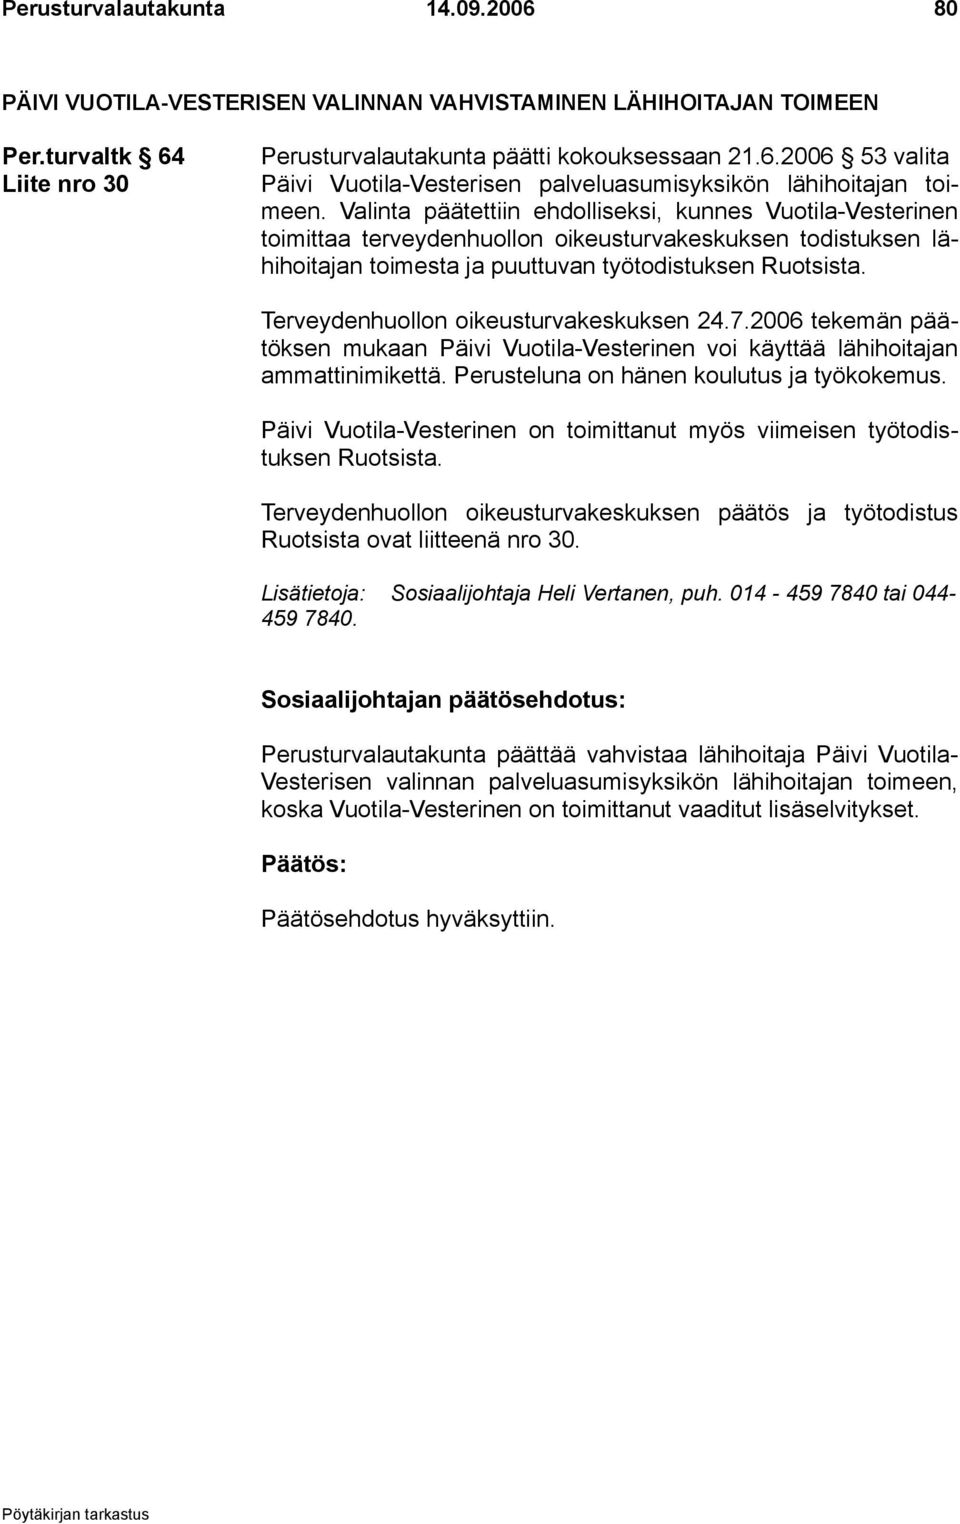 Terveydenhuollon oikeusturvakeskuksen 24.7.2006 tekemän päätöksen mukaan Päivi Vuotila-Vesterinen voi käyttää lähihoitajan ammattinimikettä. Perusteluna on hänen koulutus ja työkokemus.